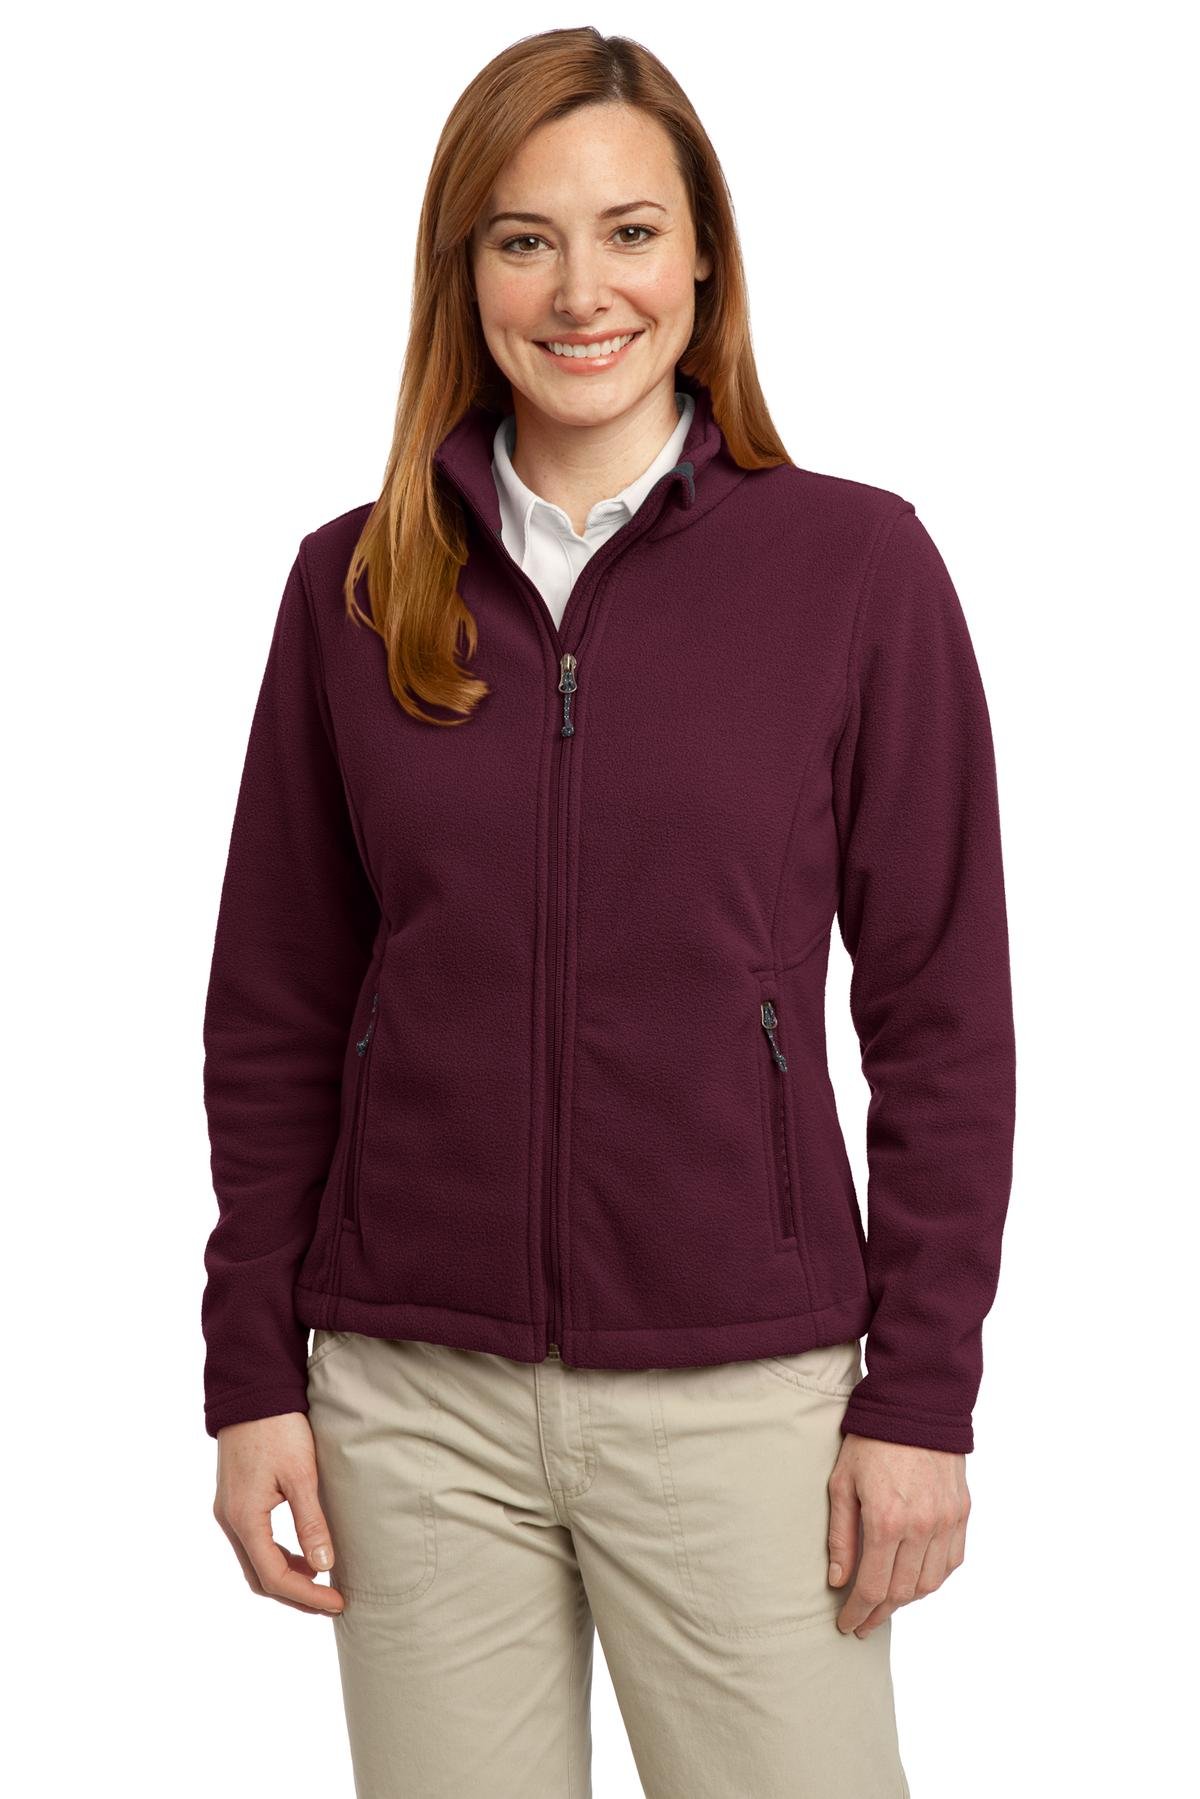 Port Authority Women's Value Fleece Jacket